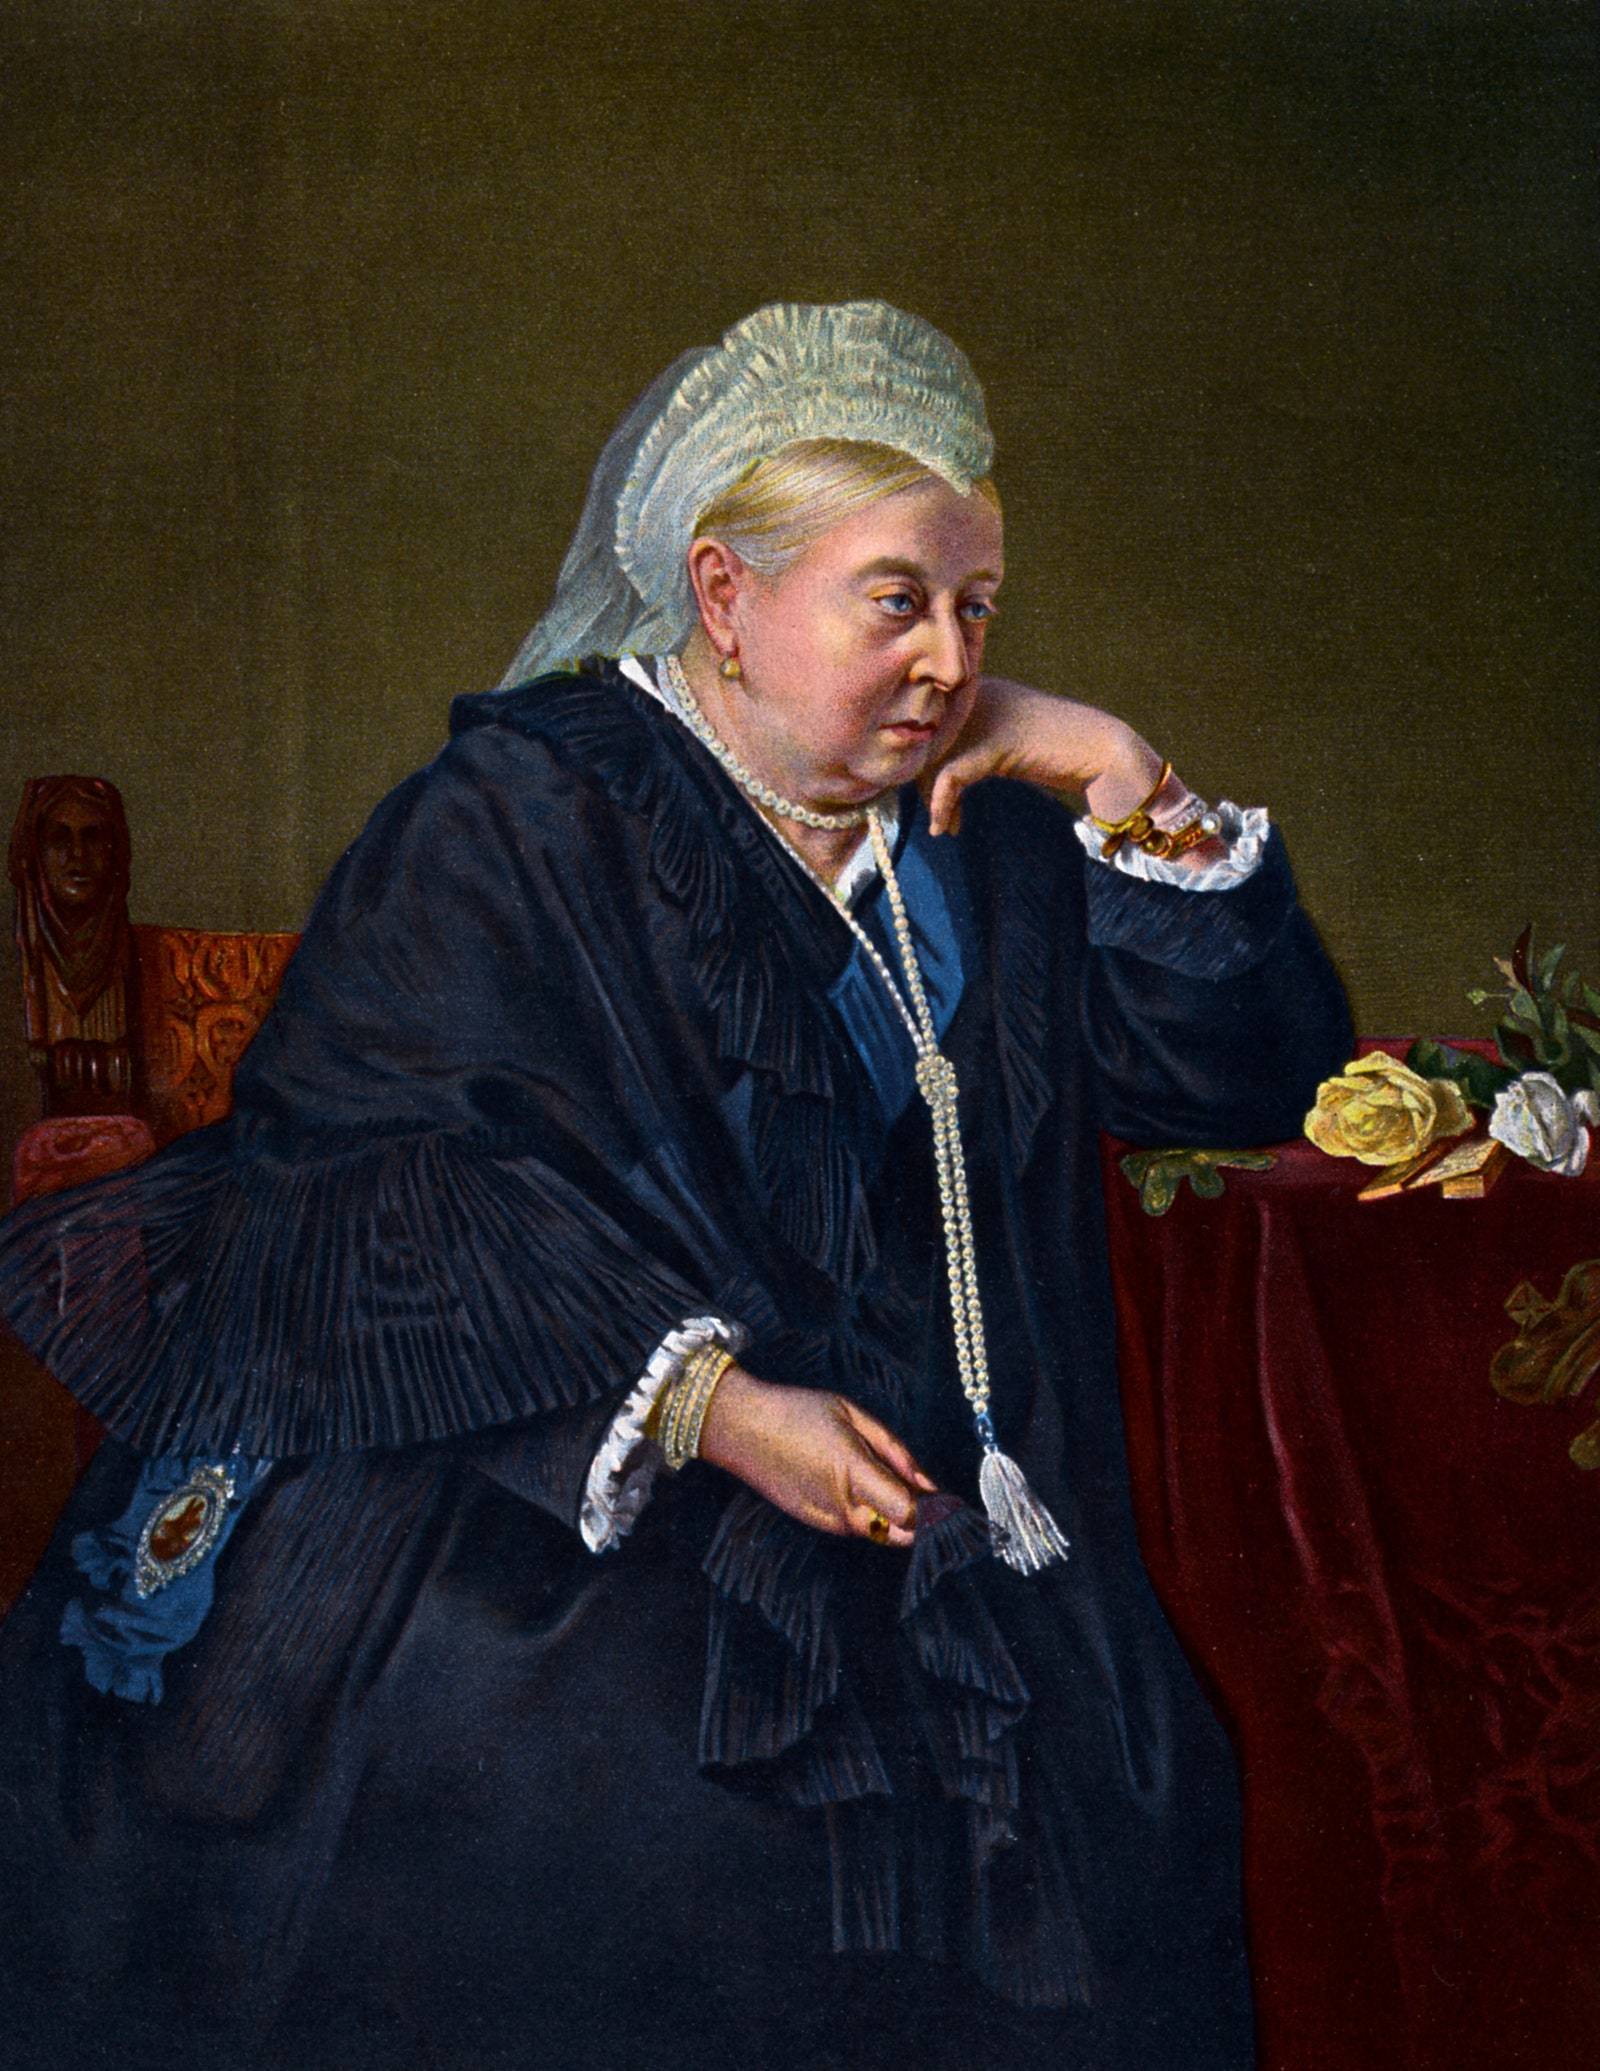 Królowa Wiktoria namalowana w 1899 r. w wieku 78 lat przez Heinricha von Angelego. Niemal połowę swojego życia spędziła w żałobie po księciu Albercie, który zmarł w 1861 r. (Fot. Getty Images)